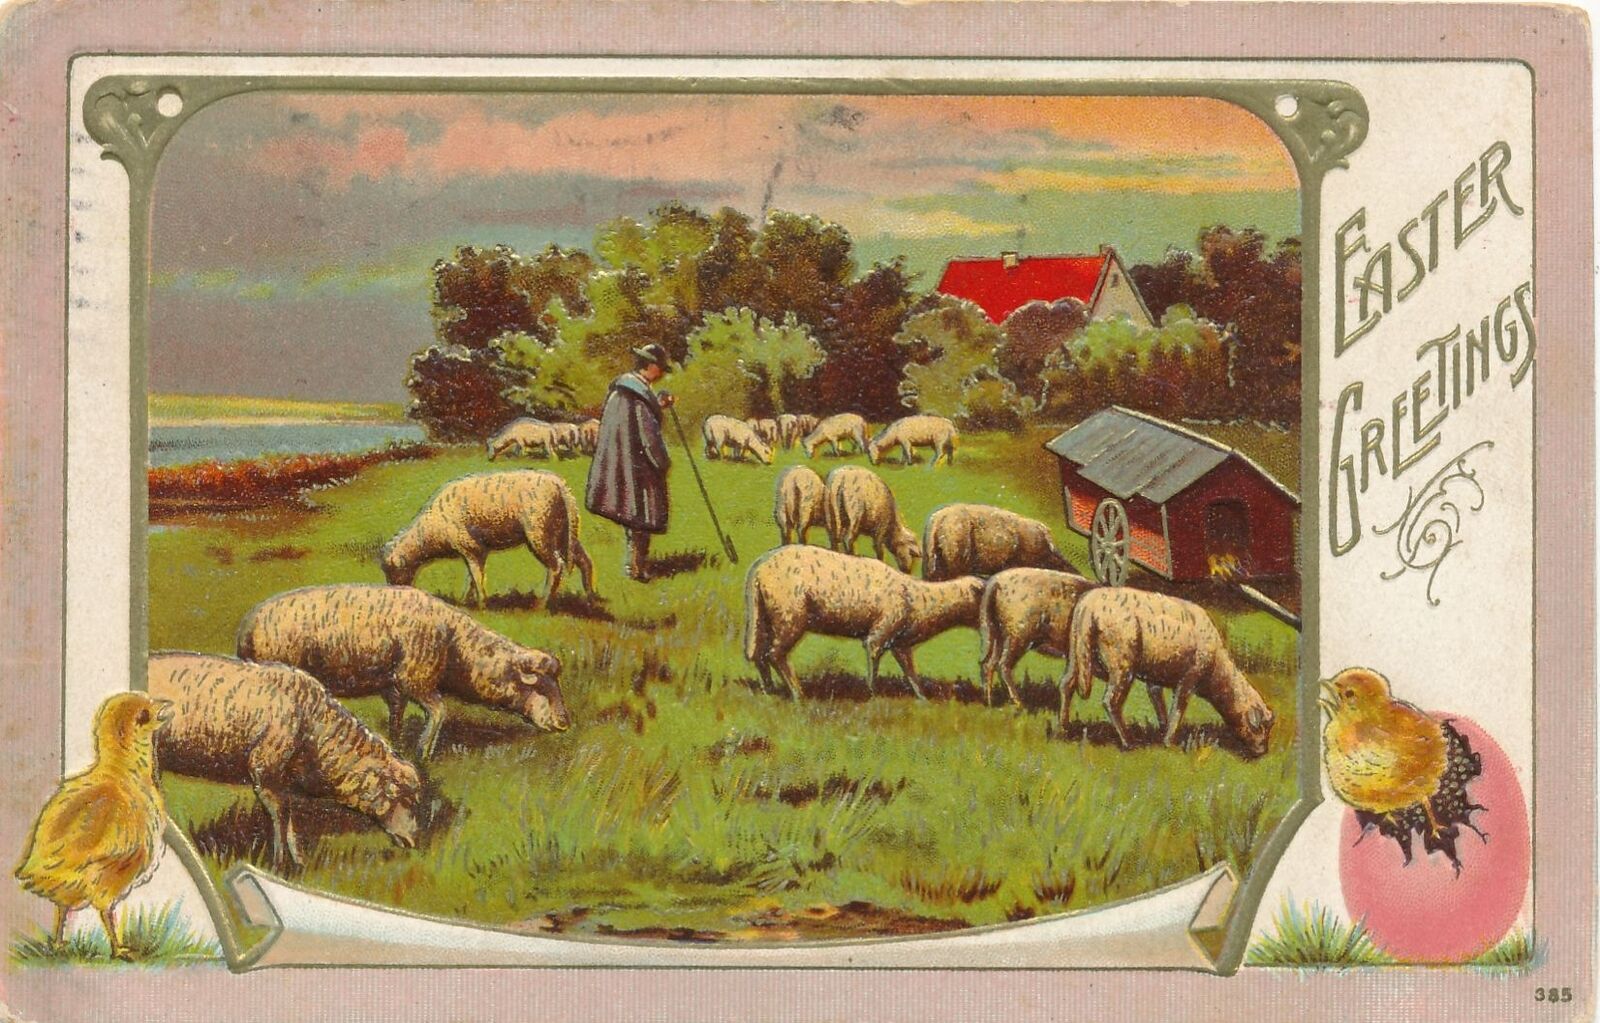 EASTER - Shepherd and Sheep In Field Easter Greetings Postcard - 1911